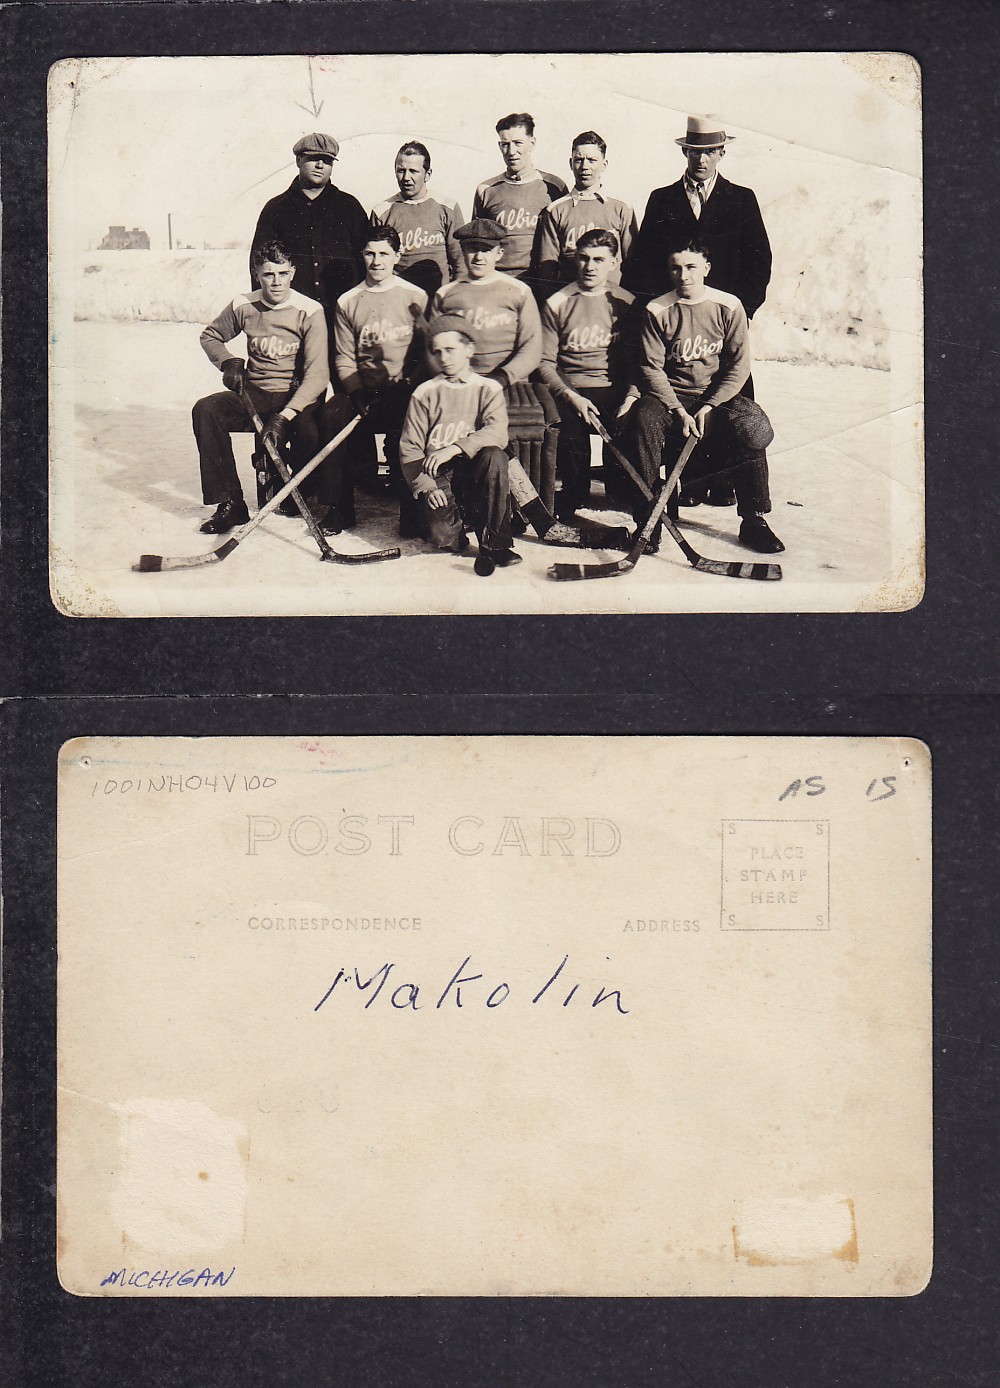 1900'S MAKOLIN HOCKEY TEAM POST CARD photo